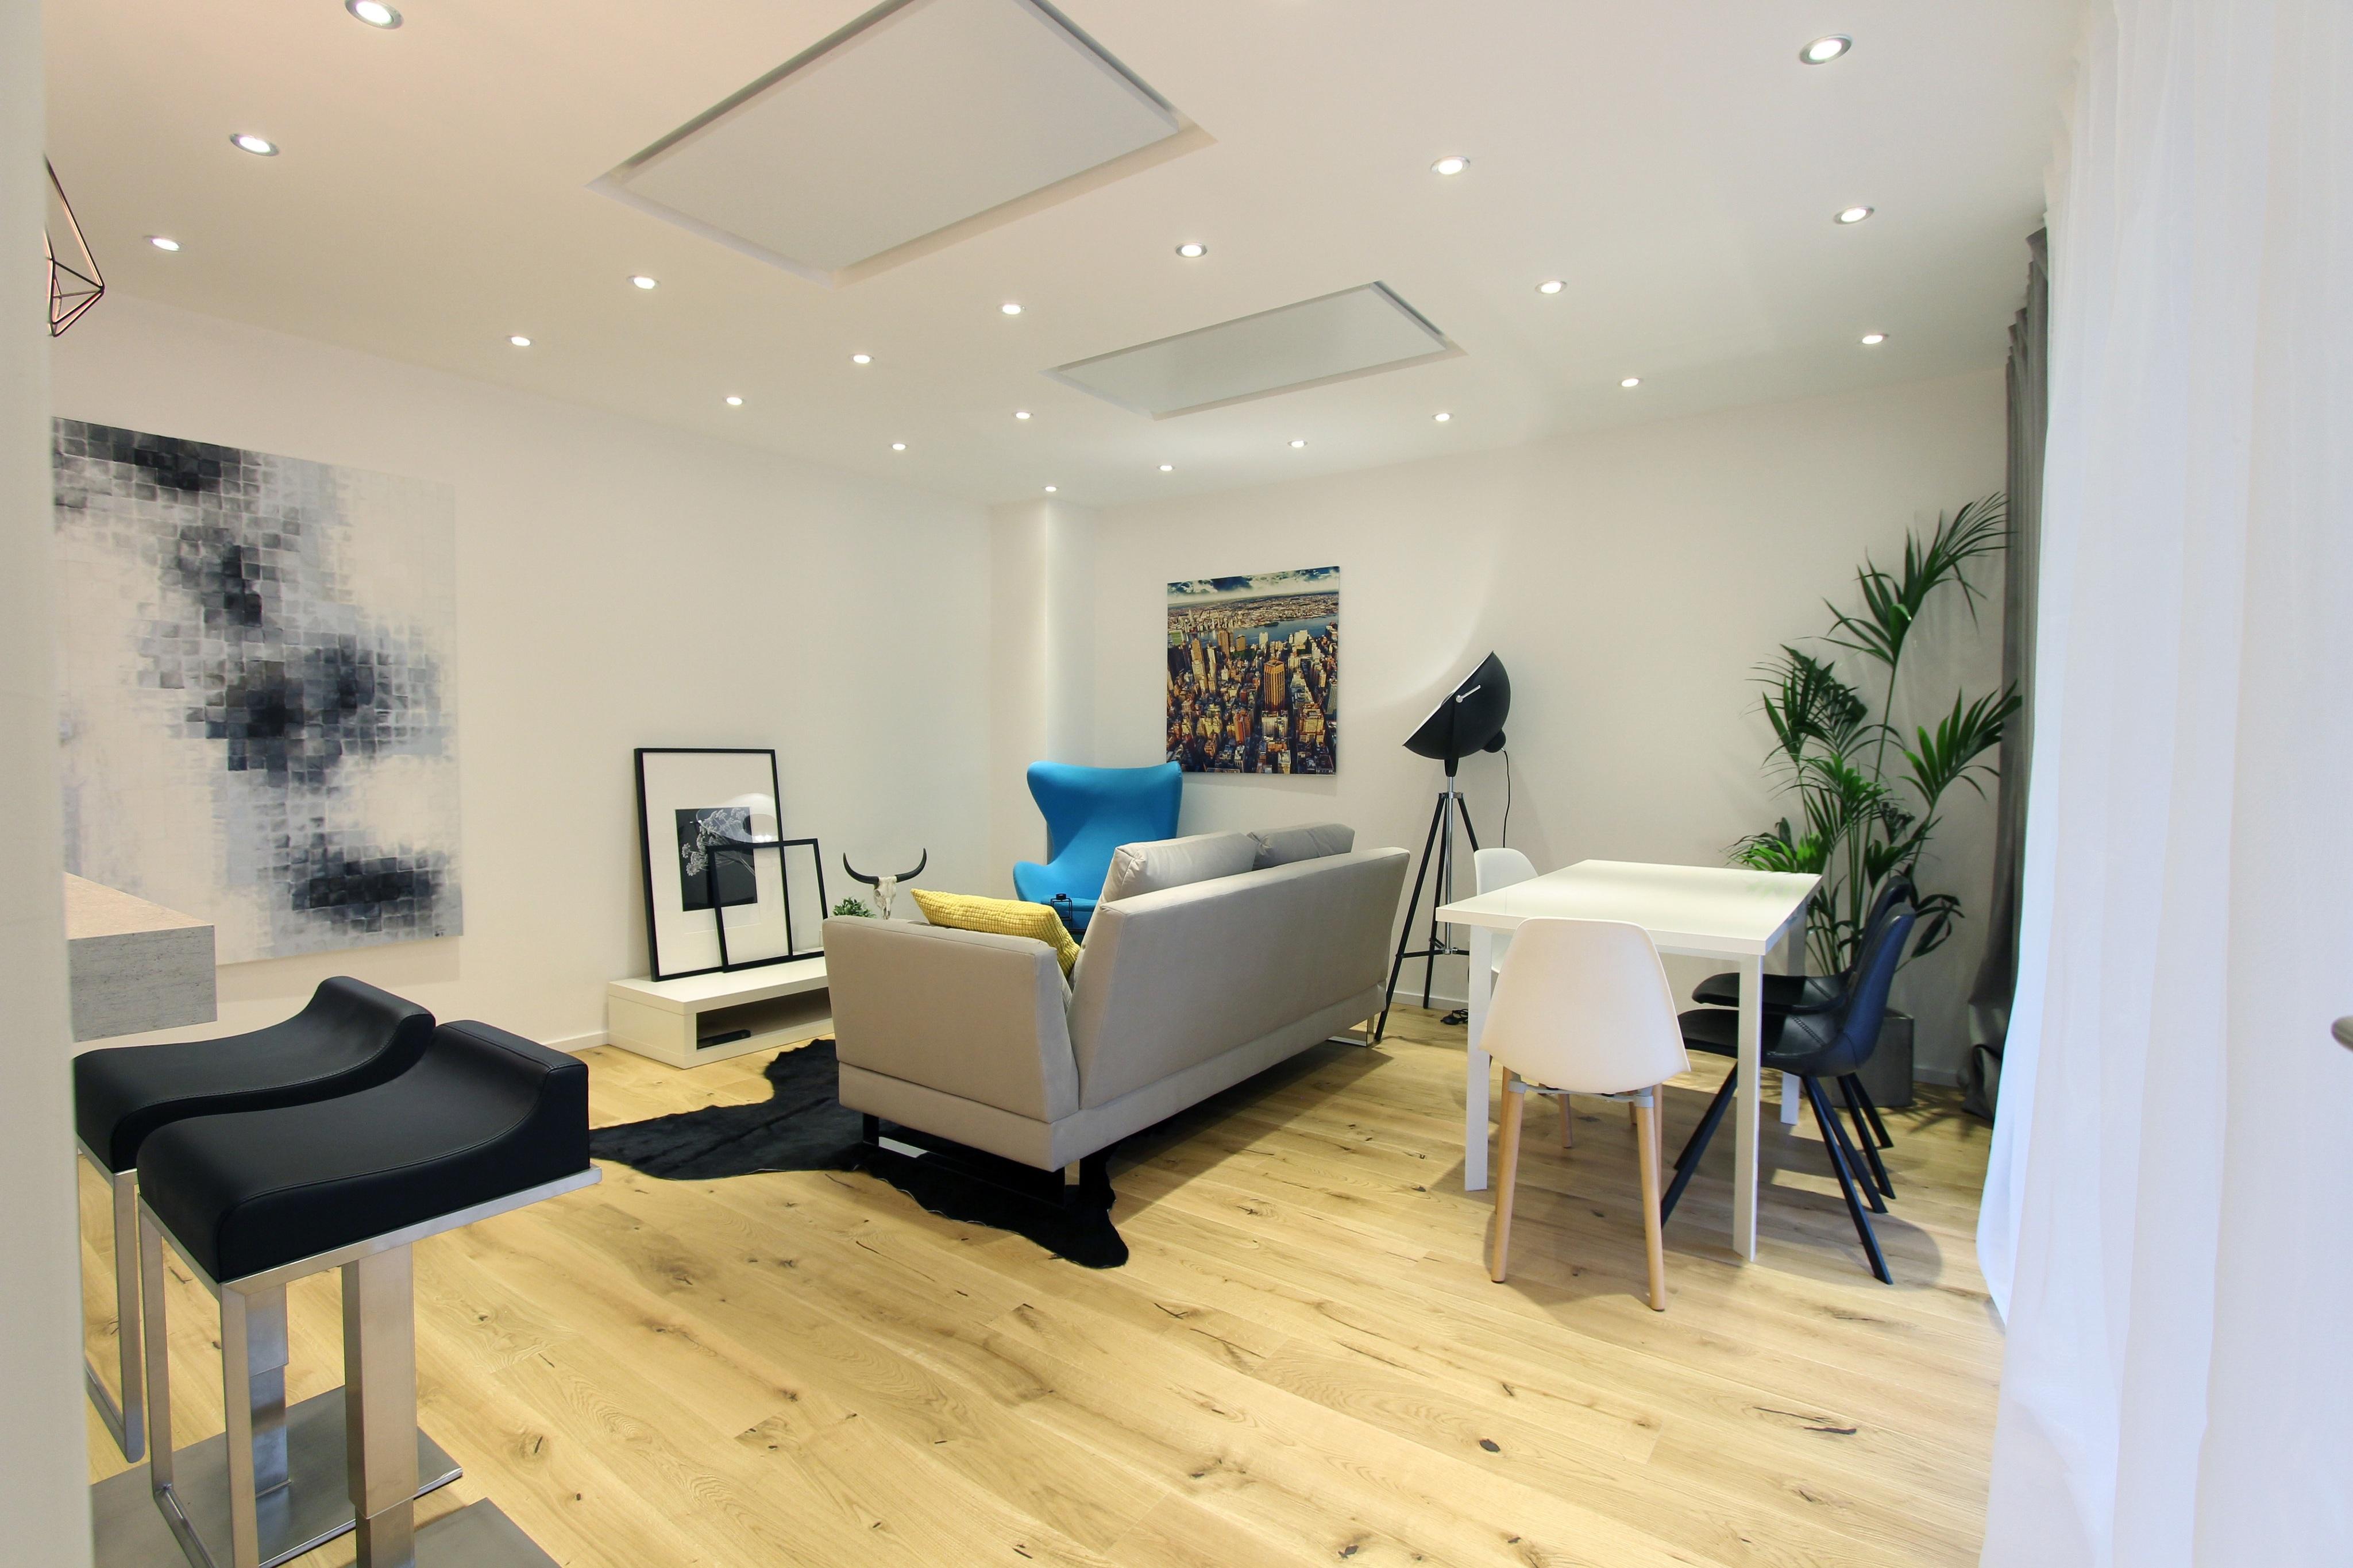 Home Staging Wohnzimmer #wohnzimmer #stehlampe #sofa #ebenerdigedusche #einrichtungsberatung #raumgestaltung #offenerwohnbereich ©Isabella Hemmer